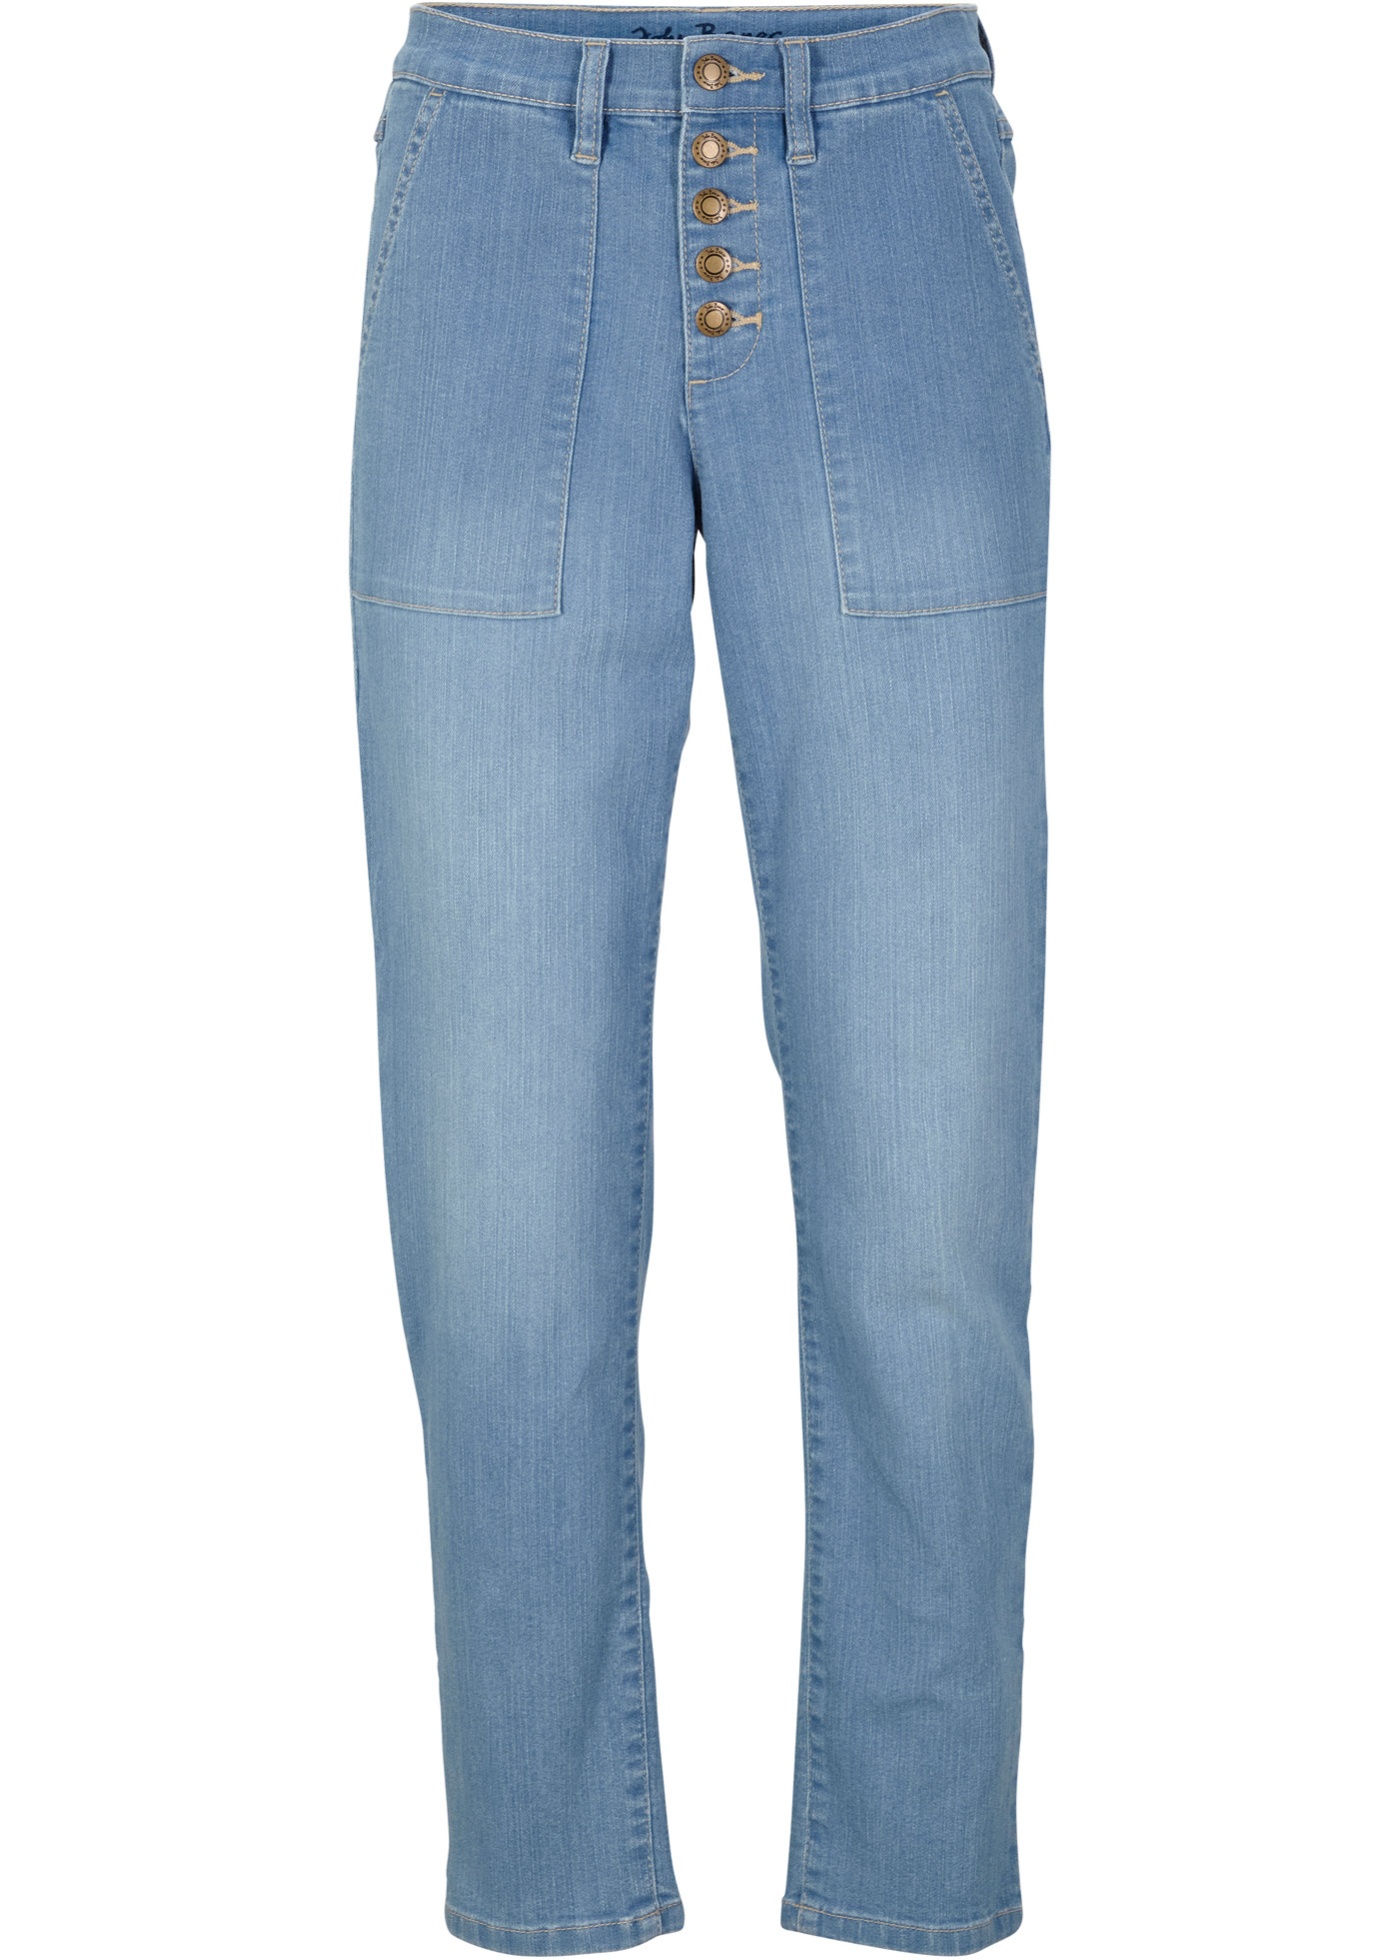 Lässige Boyfriend-Jeans mit Knopfleiste (95616081) in hellblau denim used